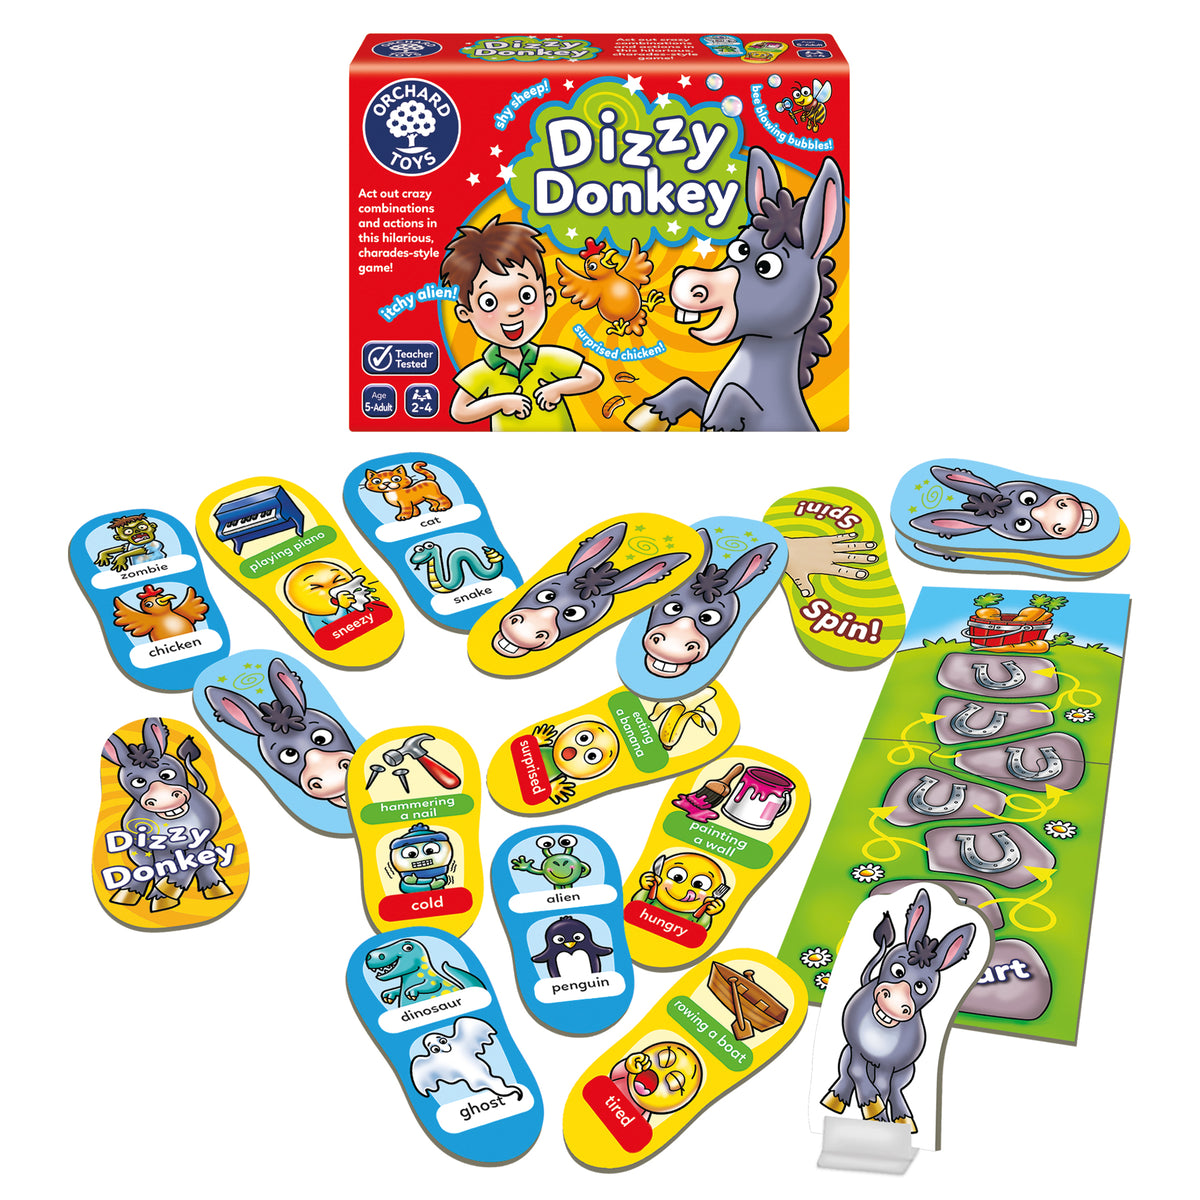 Orchard Toys - Dizzy Donkey product image 2